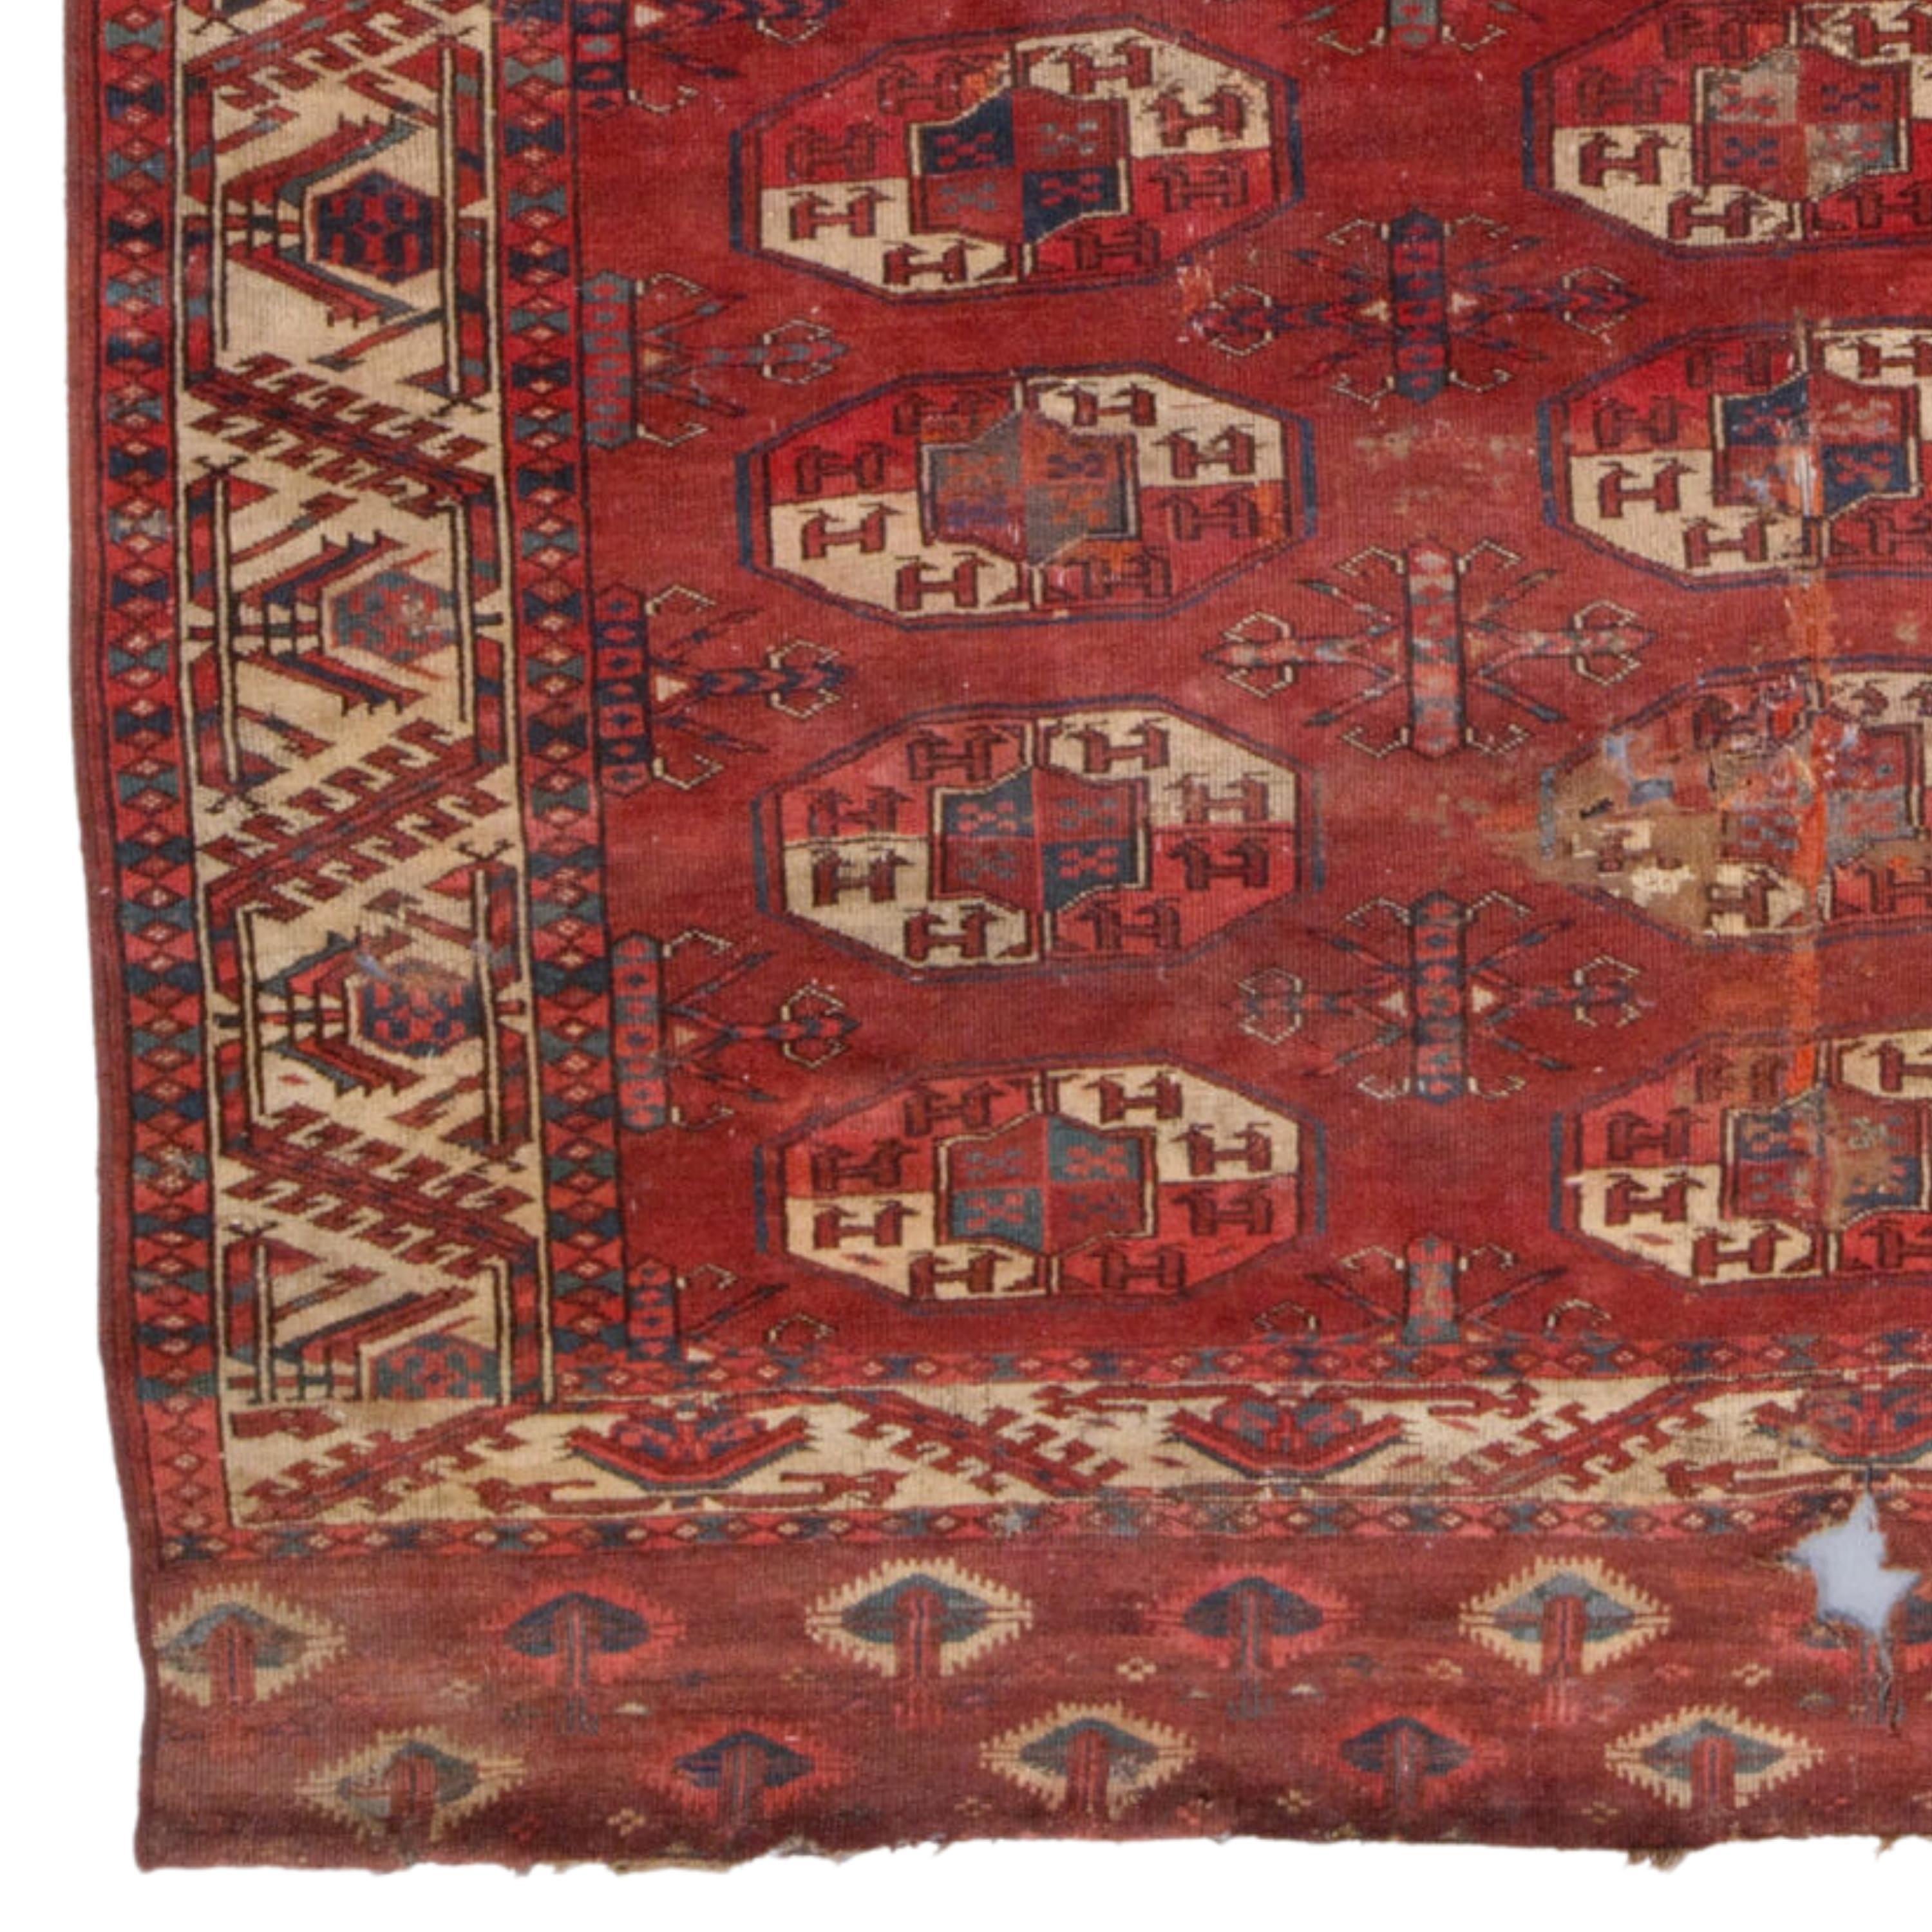 Tapis principal Yomud ancien - Early Turkmen Yomud Main Rug
Circa 1800   Taille 167 x 246 cm (5,47 - 8,07 ft)

Ce tapis principal unique d'Eleg, datant des années 1800, ajoute de la noblesse à tout espace grâce à sa riche histoire et à l'élégance de